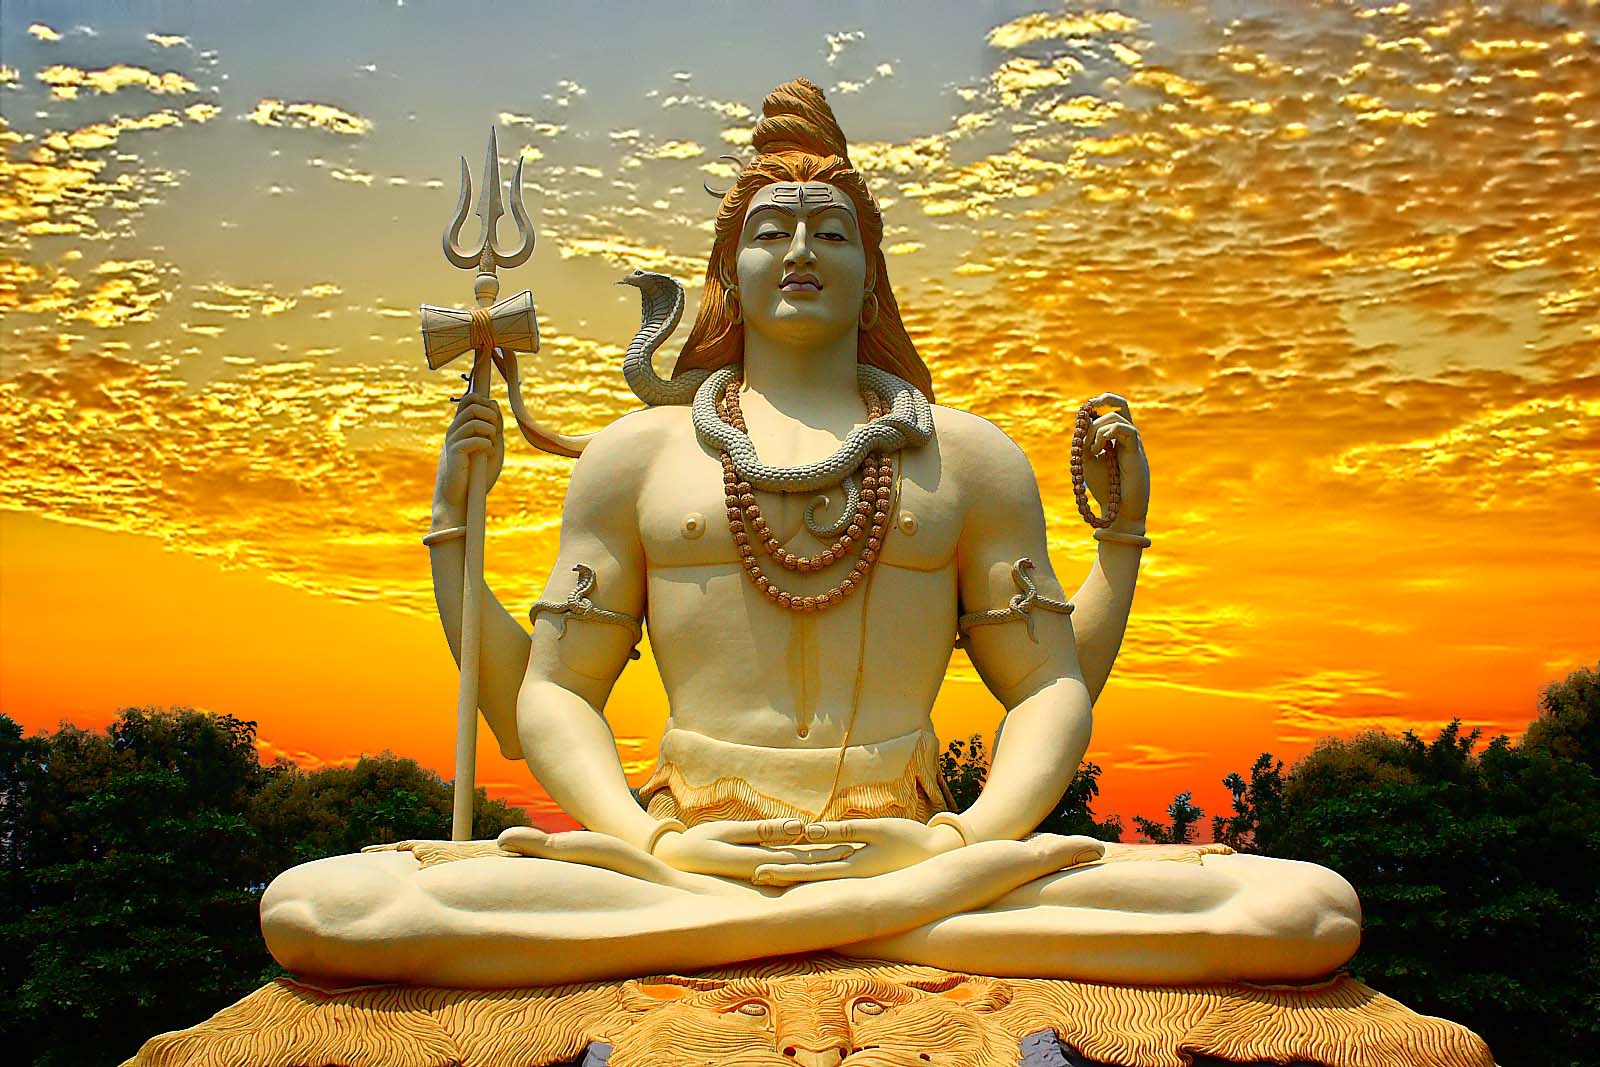 Lord Shiva HD Wallpapers ~ God wallpaper hd